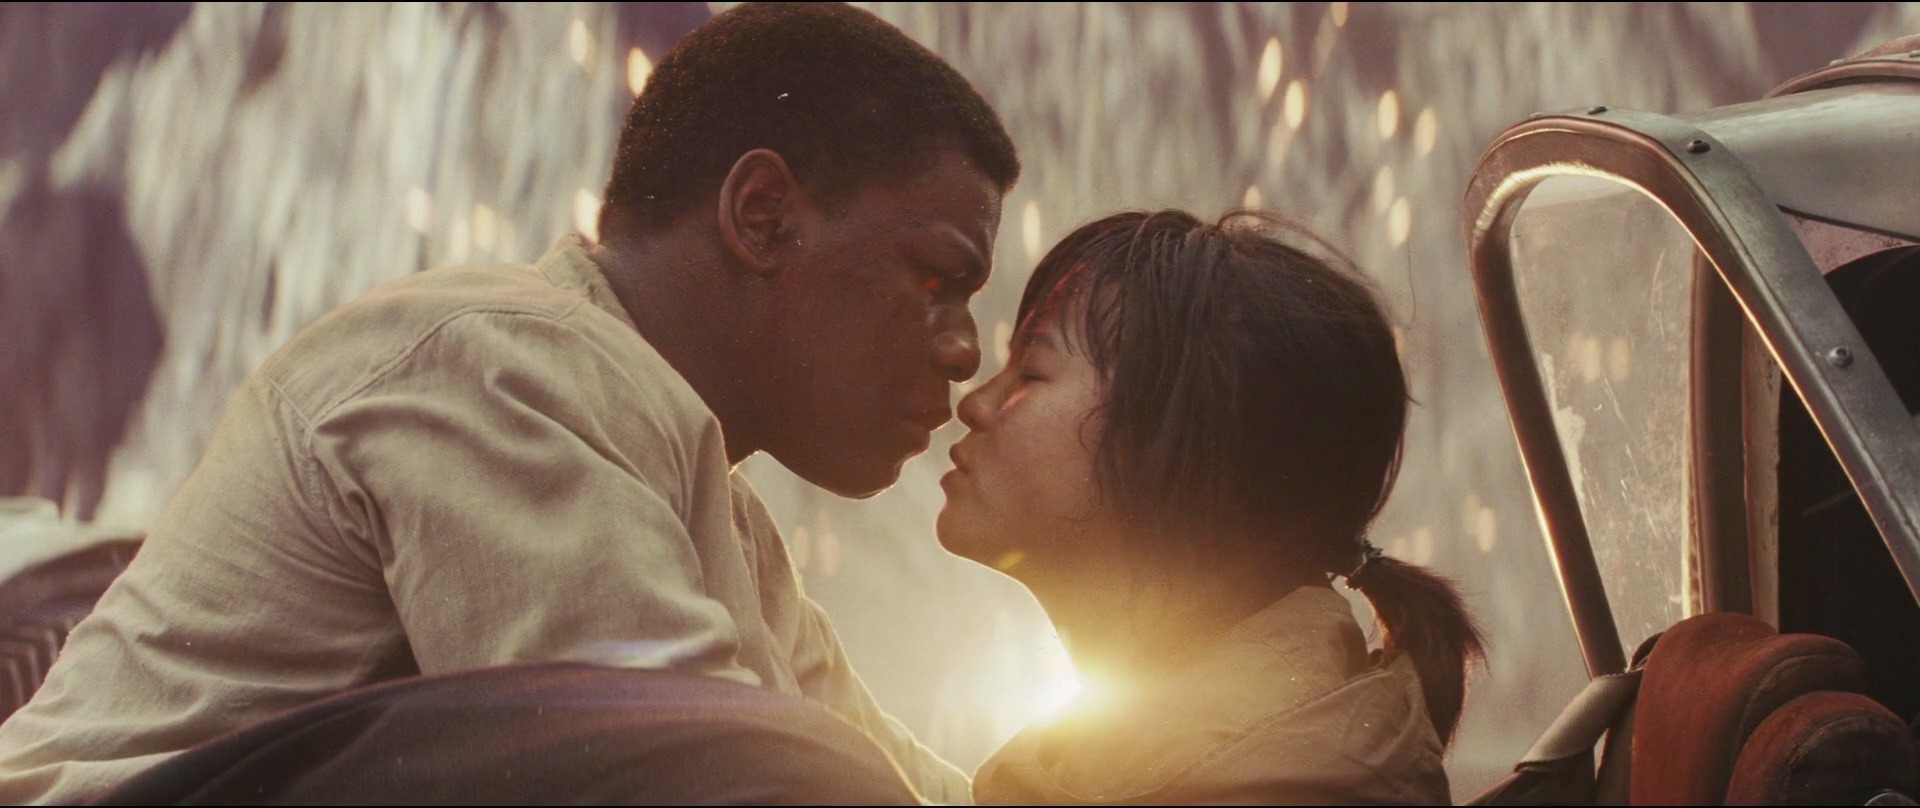 Finn and Rose Tico in Star Wars The Last Jedi